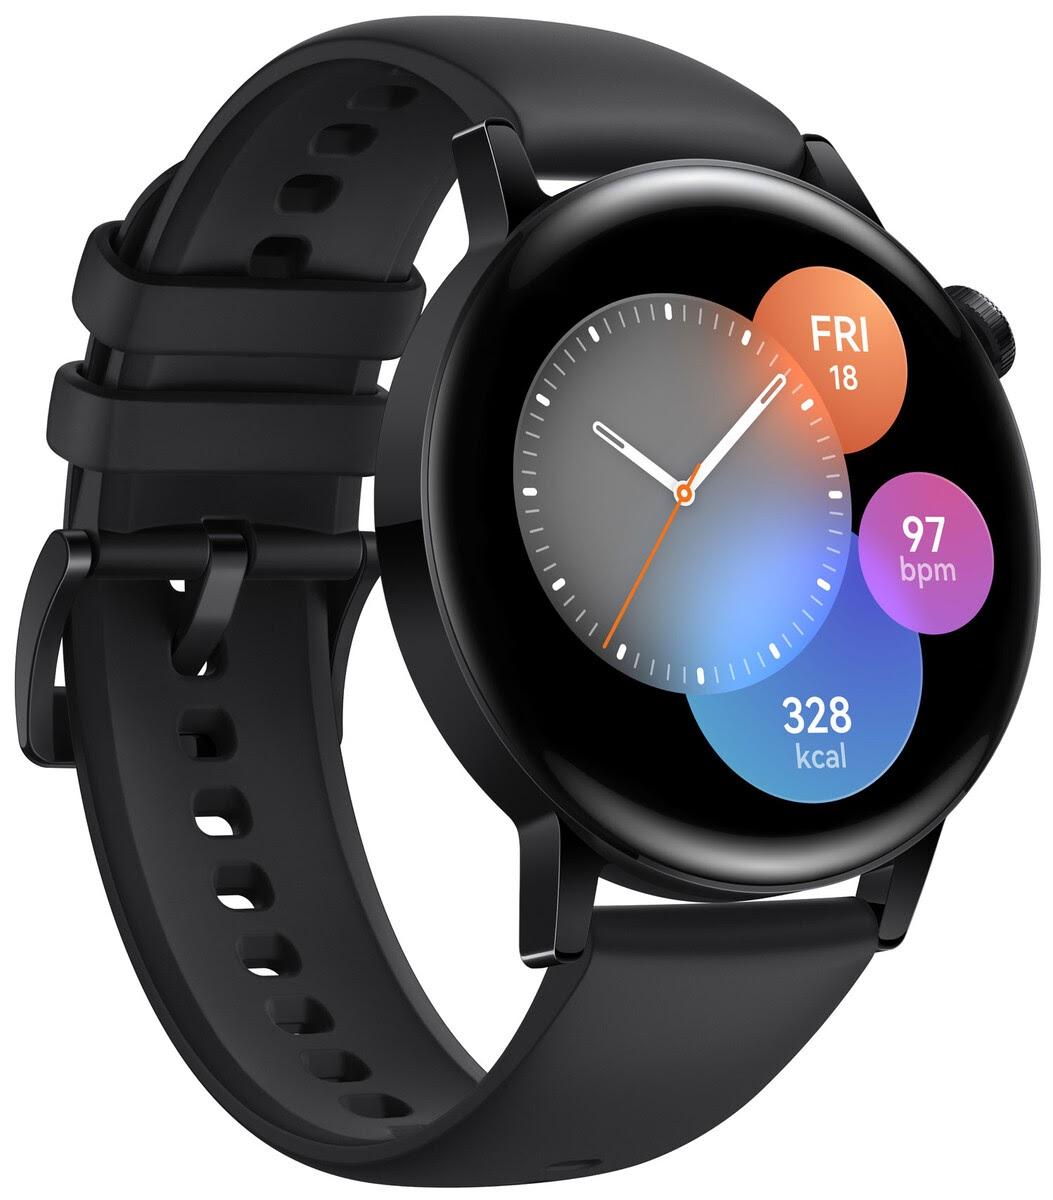 Huawei Watch GT 3 a fost anunţat: ceas inteligent cu 14 zile de autonomie, senzor nou de puls, HarmonyOS 2.0